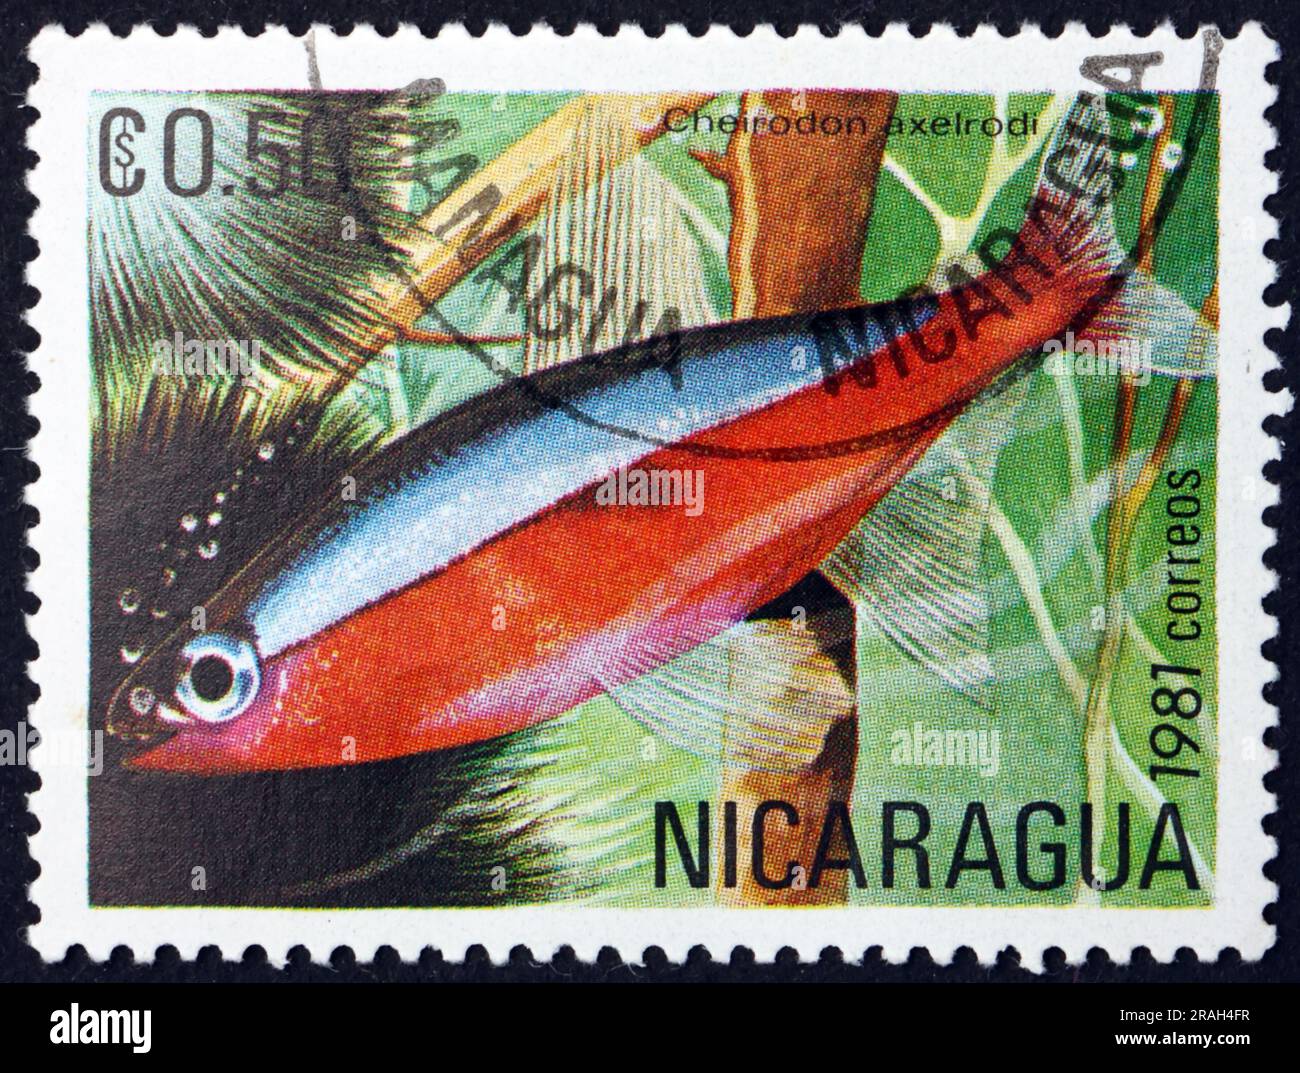 NICARAGUA - CIRCA 1981: Ein in Nicaragua gedruckter Stempel zeigt, dass der Kardinal tetra, Cheirodon axelrodi, ein tropischer Süßwasserfisch ist, der im oberen Teil heimisch ist Stockfoto